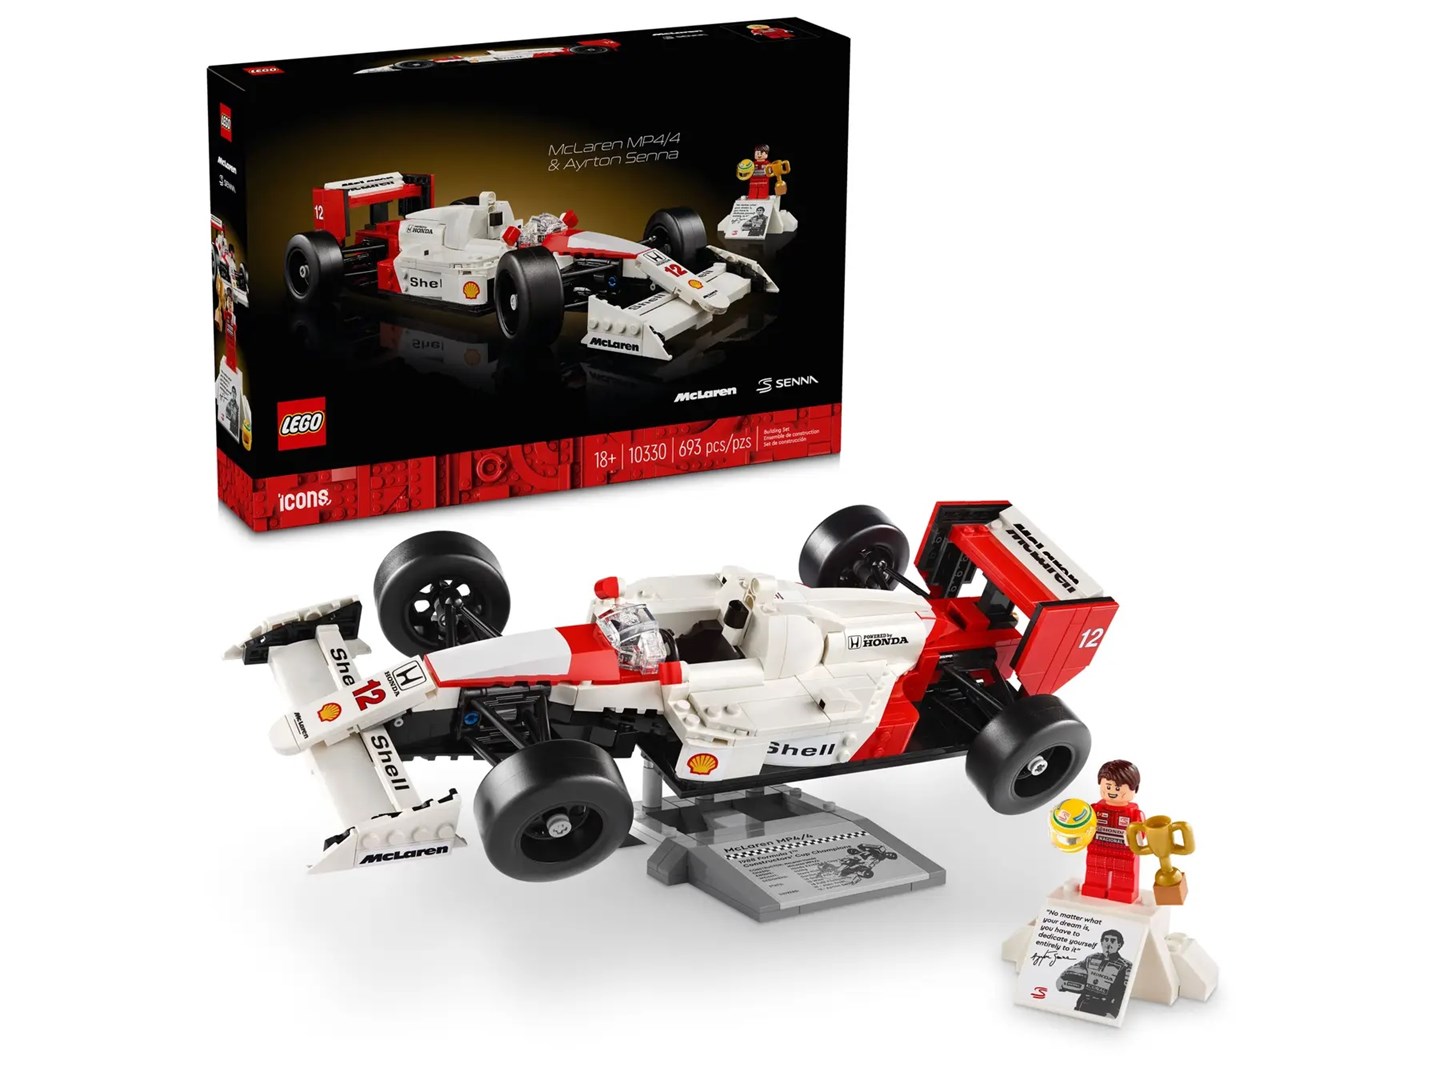 Tuntitarjouksena verkkokaupassamme Korhone on LEGO ICONS 10330 McLaren MP4/4 & Ayrton Senna